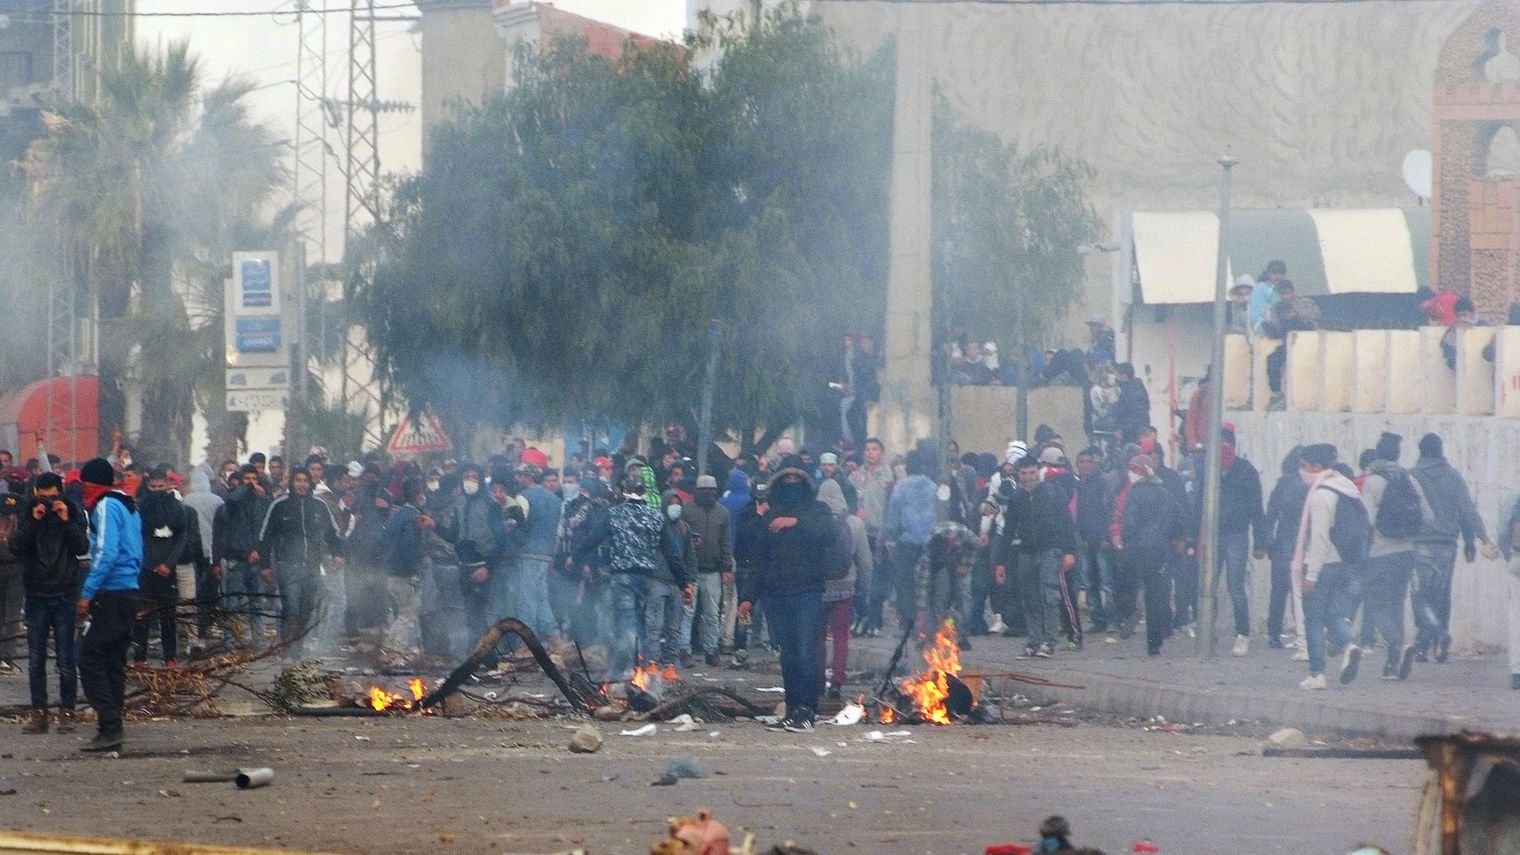 Tunisie-Kasserine: 10 mandats de dépôts contre des protestataires